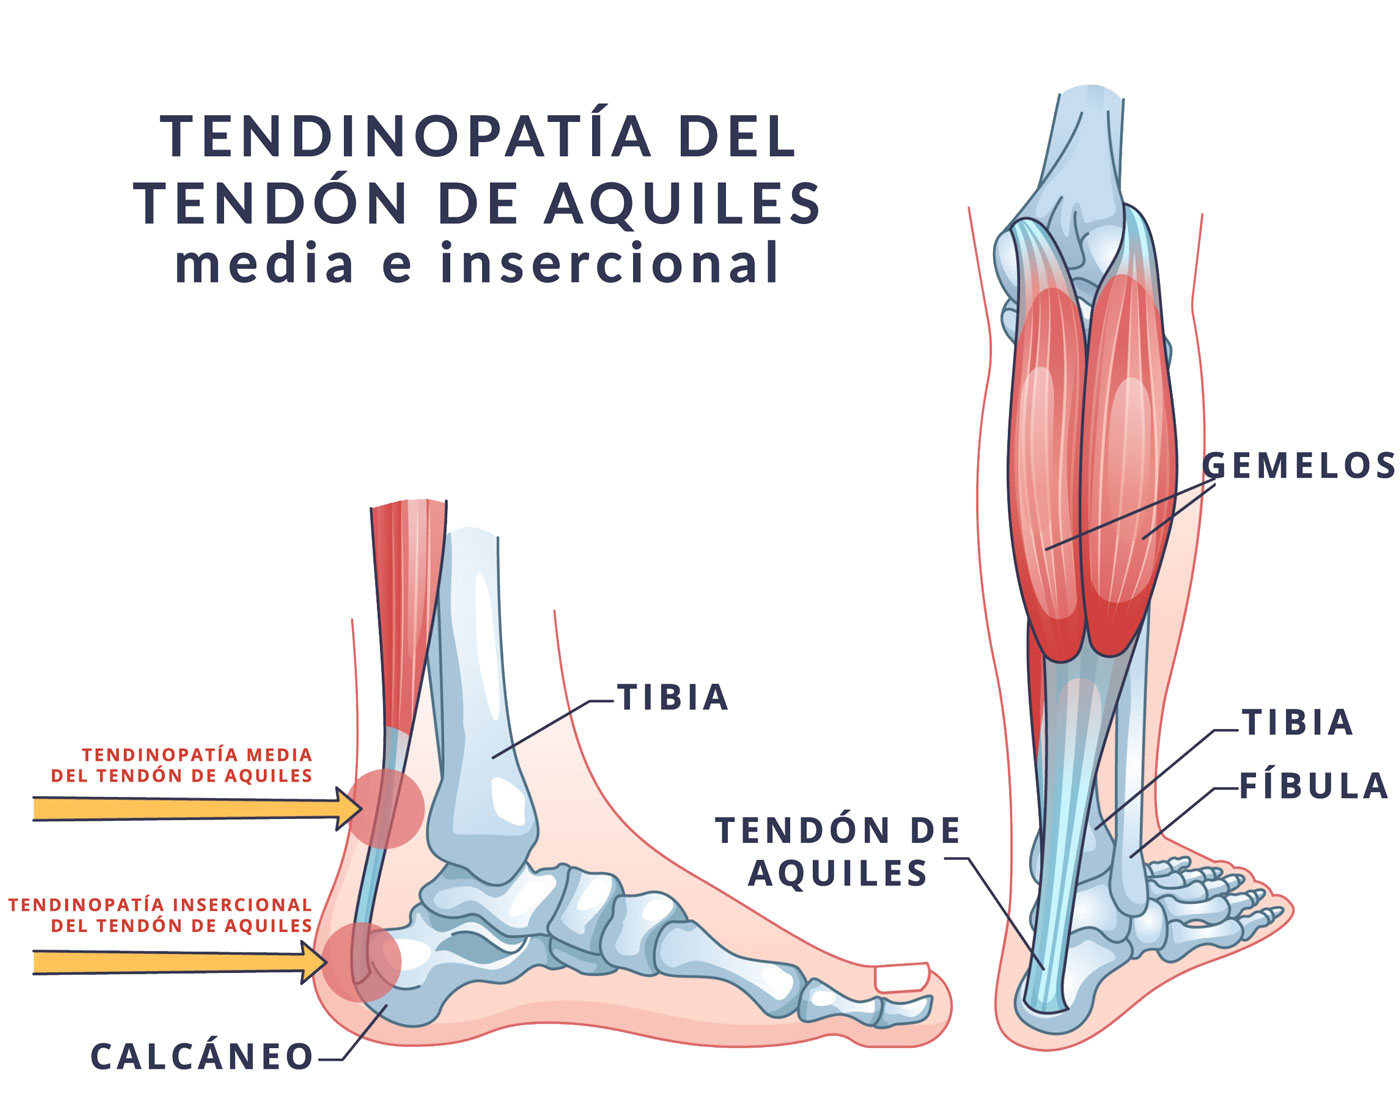 tendinopatia media e insercional del tendon de aquiles